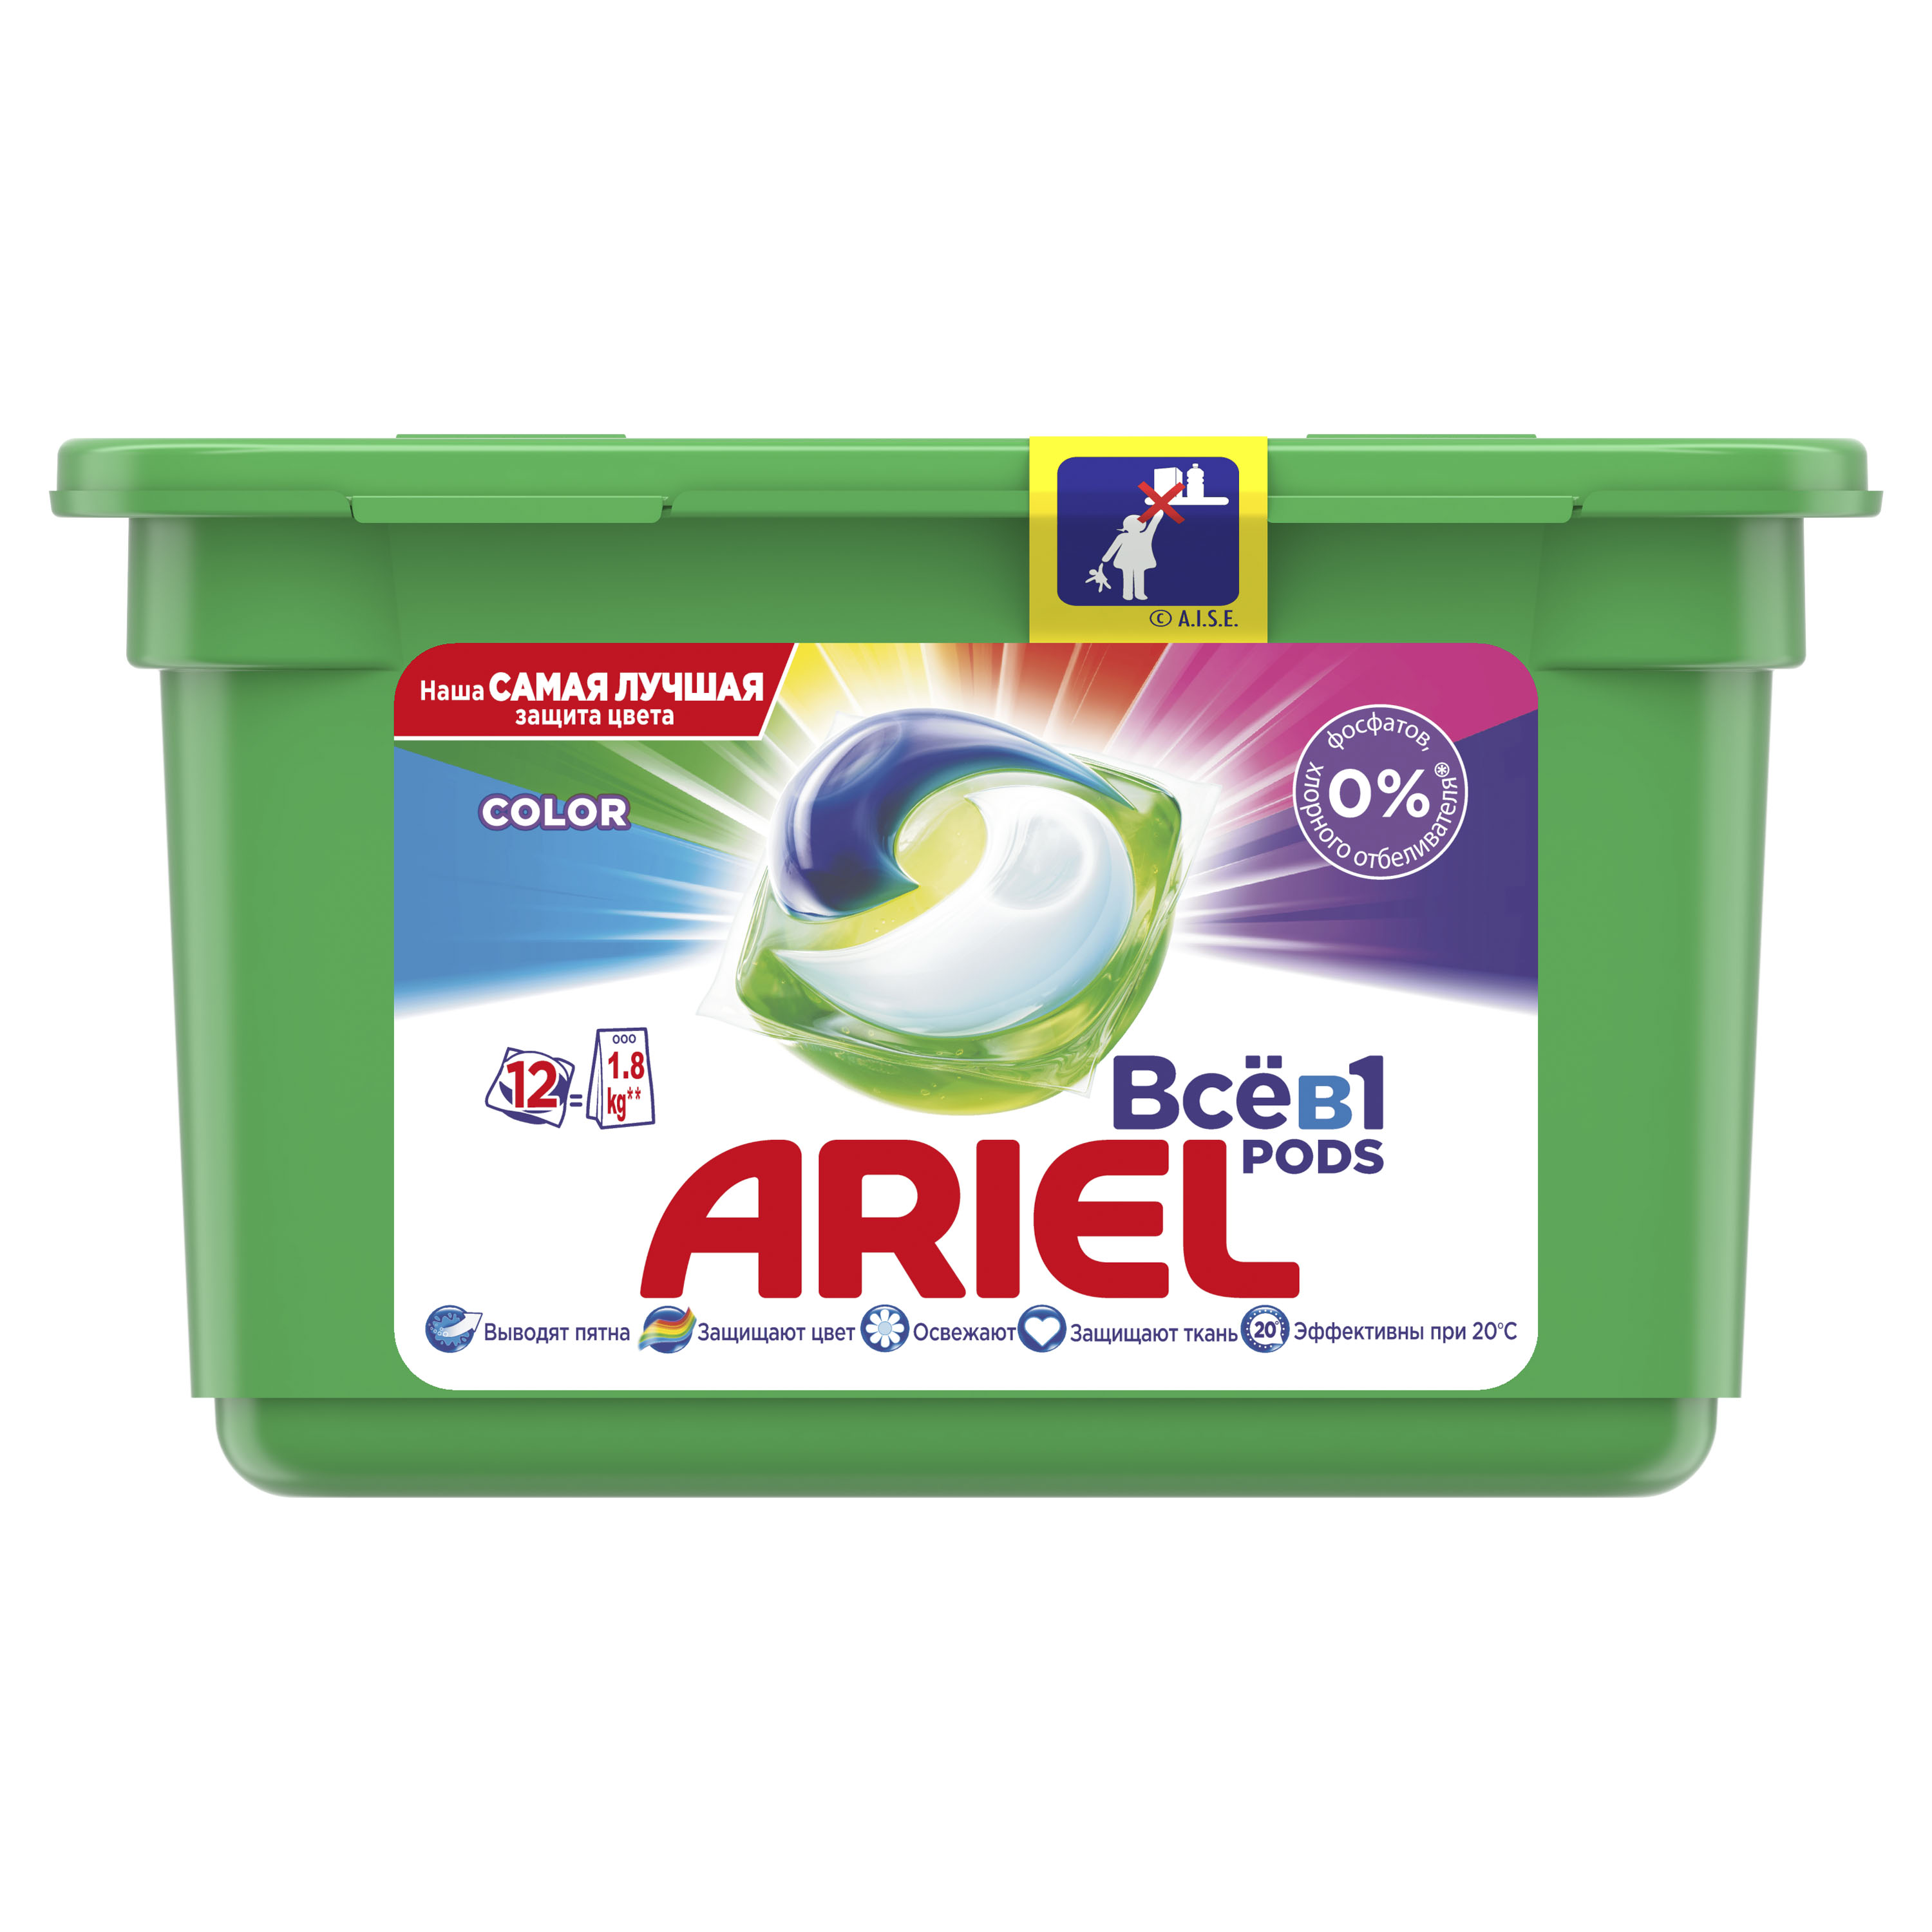 Капсули для прання Ariel Pods Все-в-1 Color, 12 шт. - фото 1